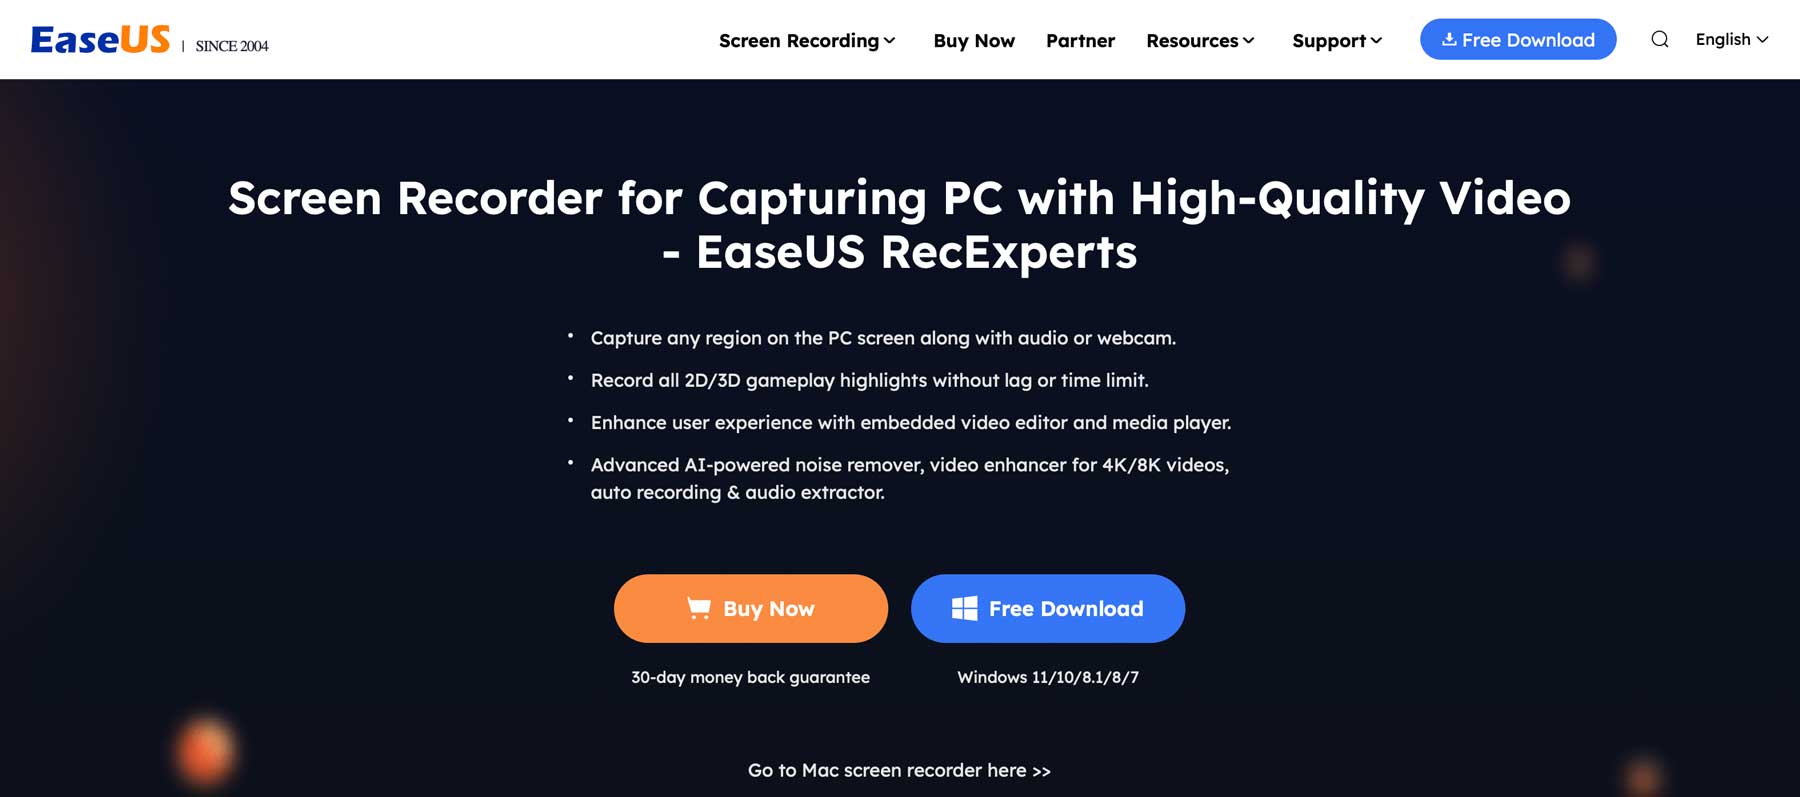 EaseUS screen recording software